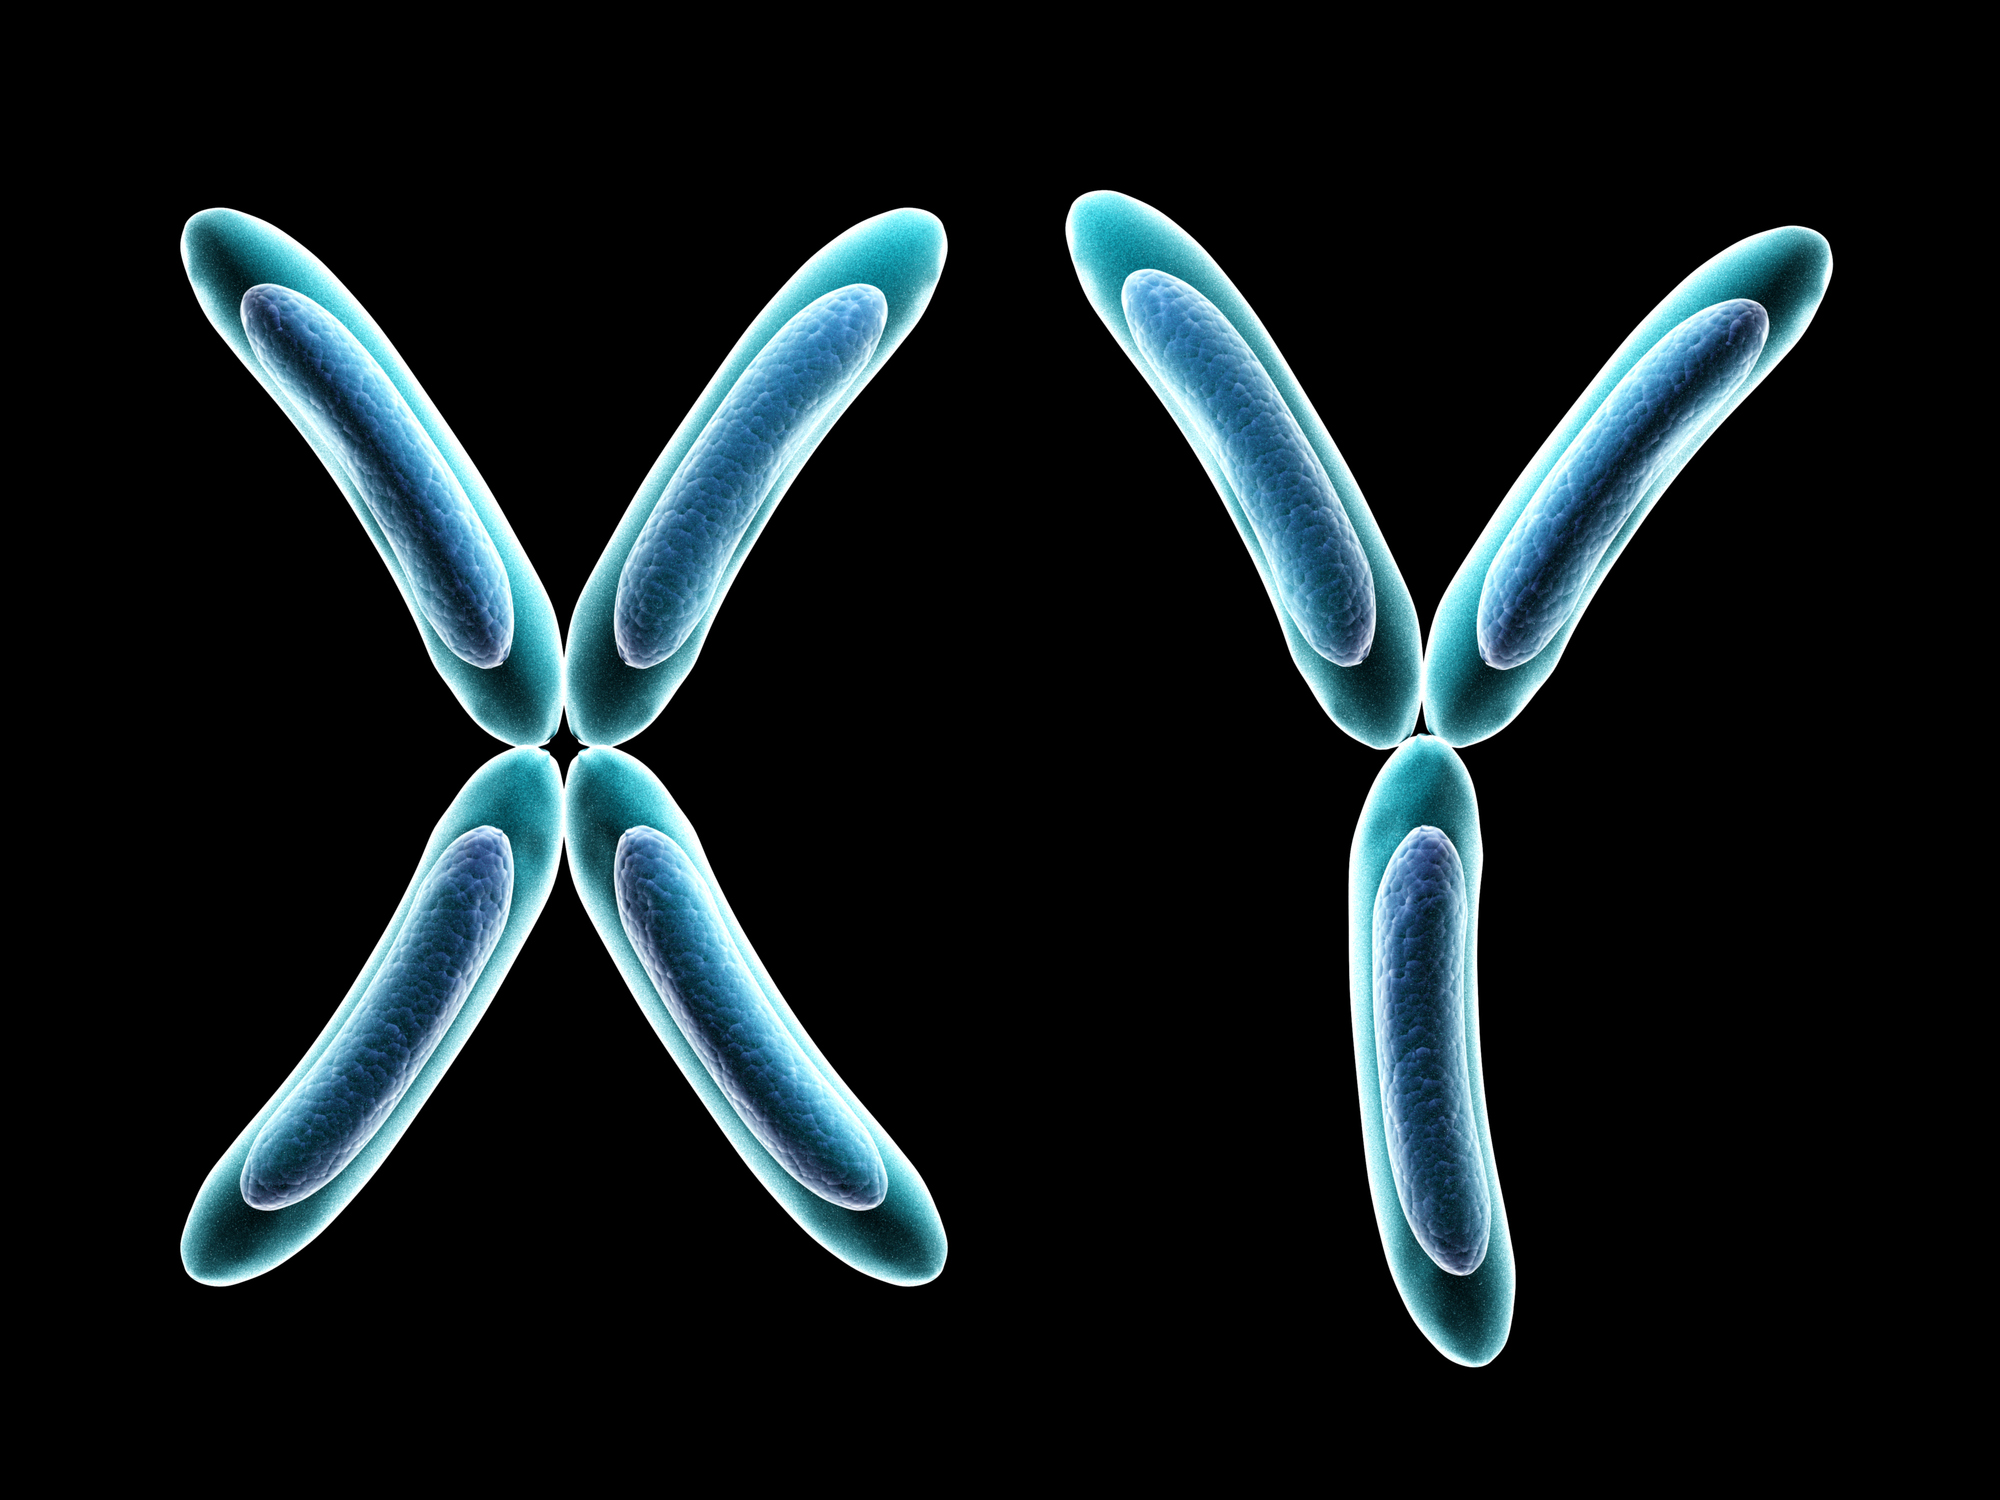 Вторая х хромосома